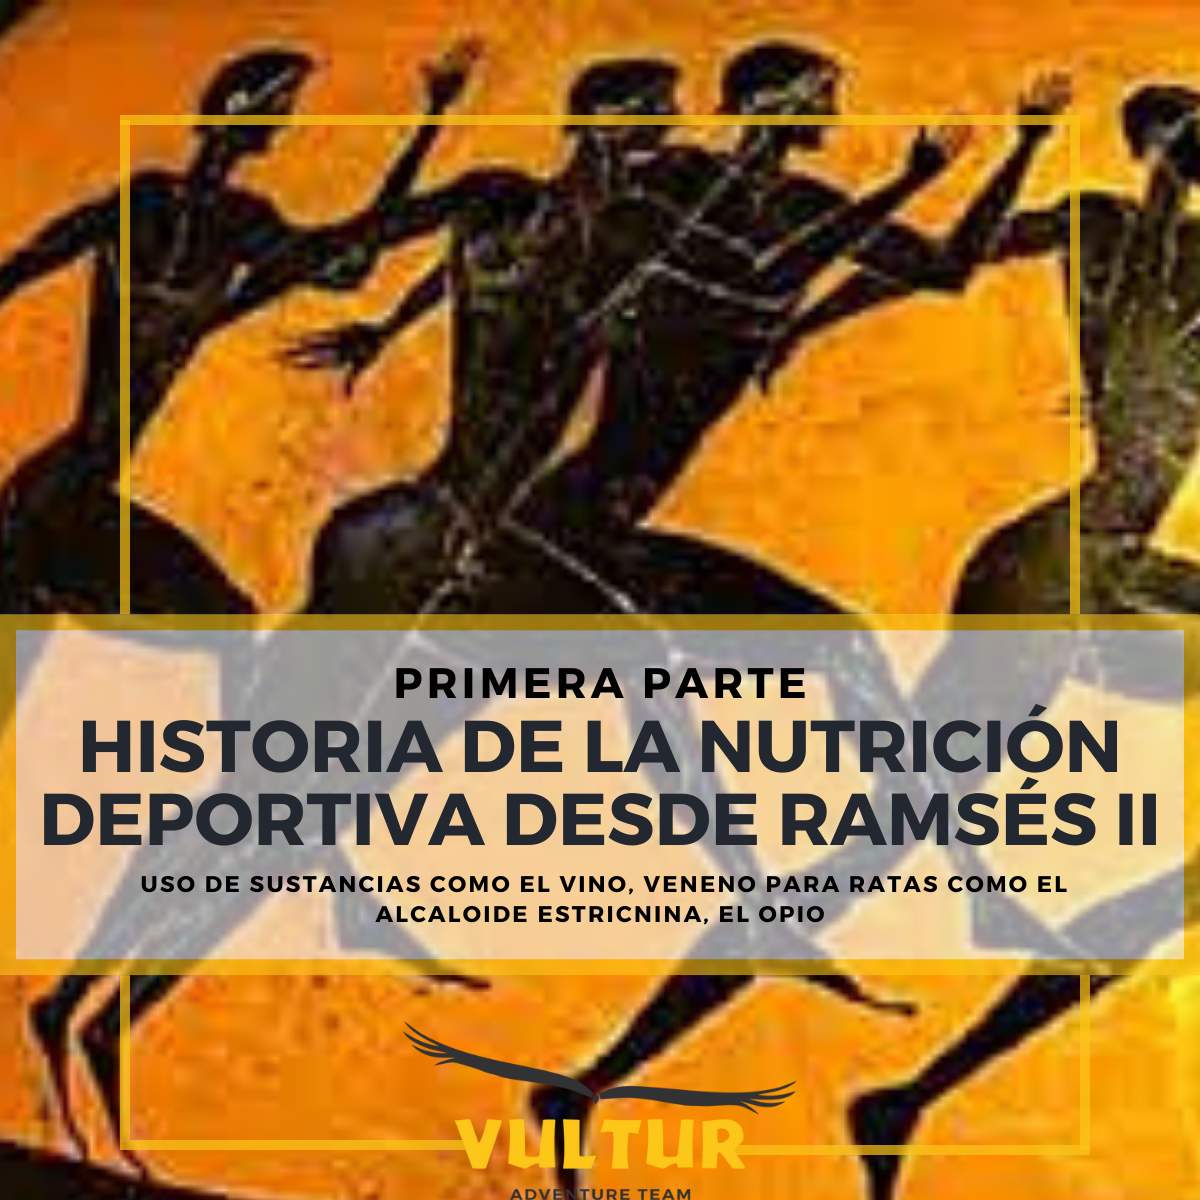 HISTORIA DE LA NUTRICIÓN DEPORTIVA DESDE RAMSÉS II